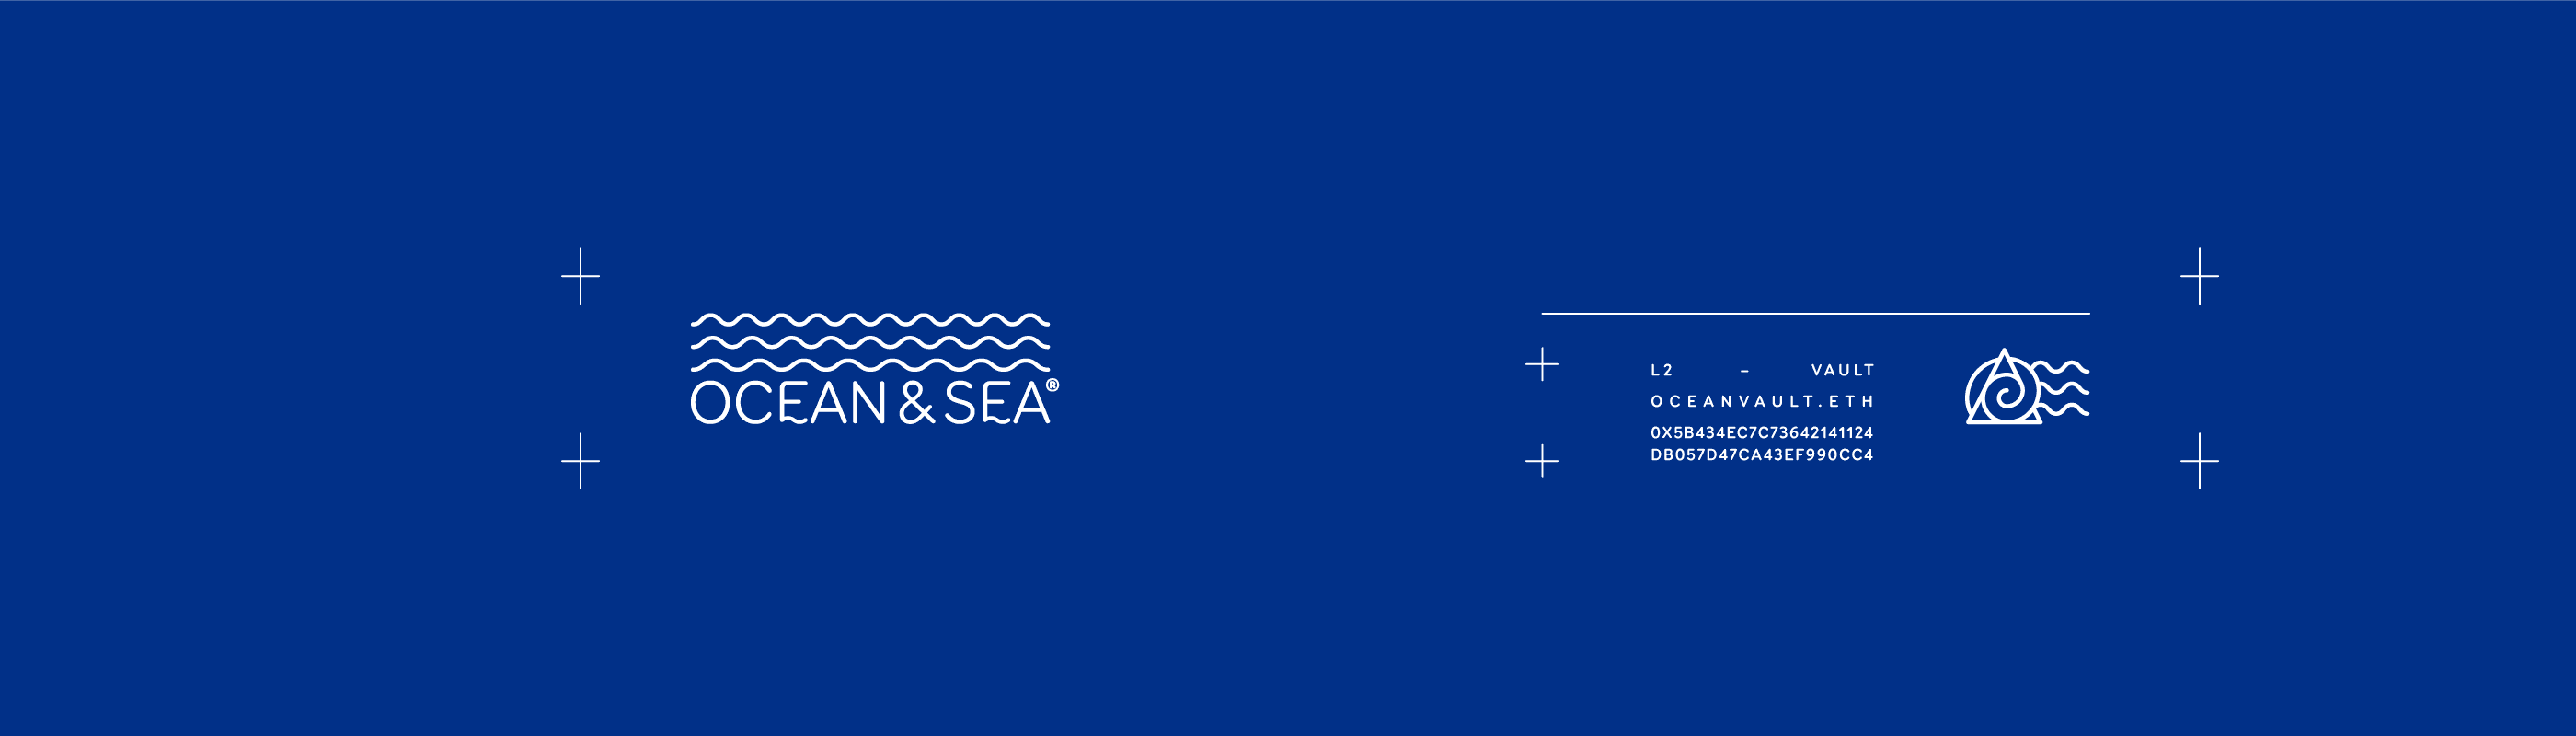 oceanandsea_vault banner